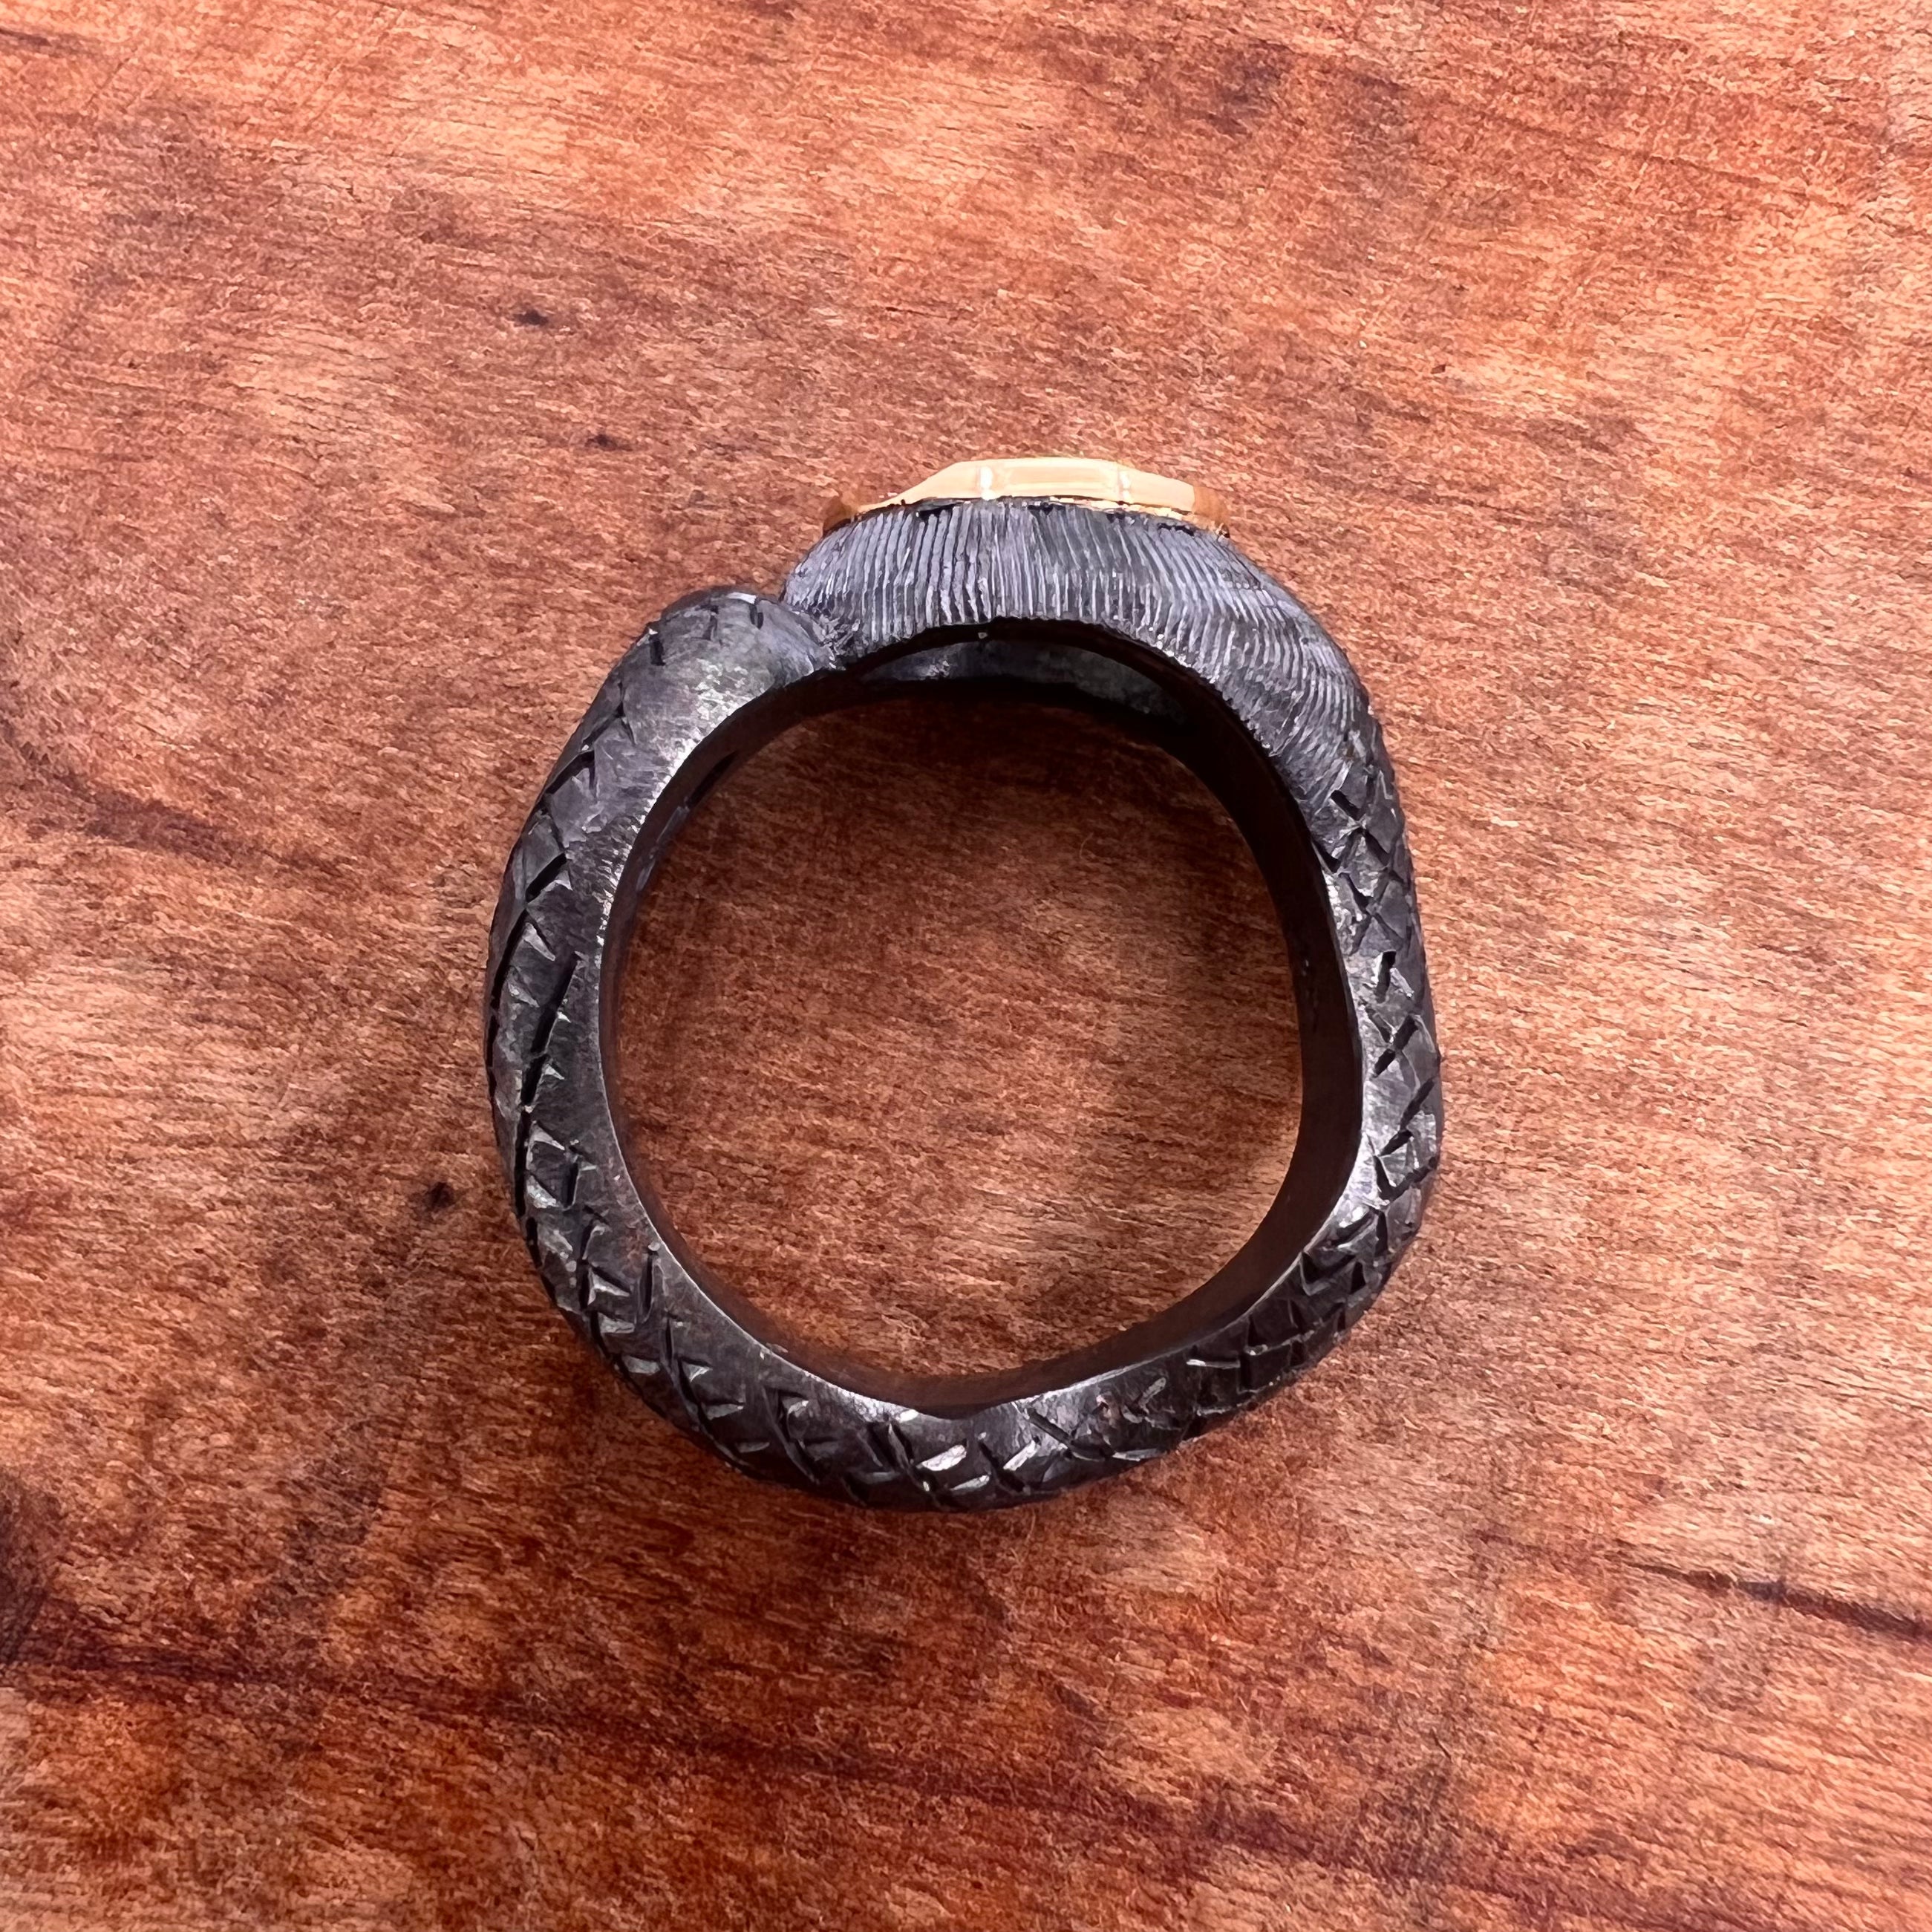 Snake ring with Tsavorite garnet